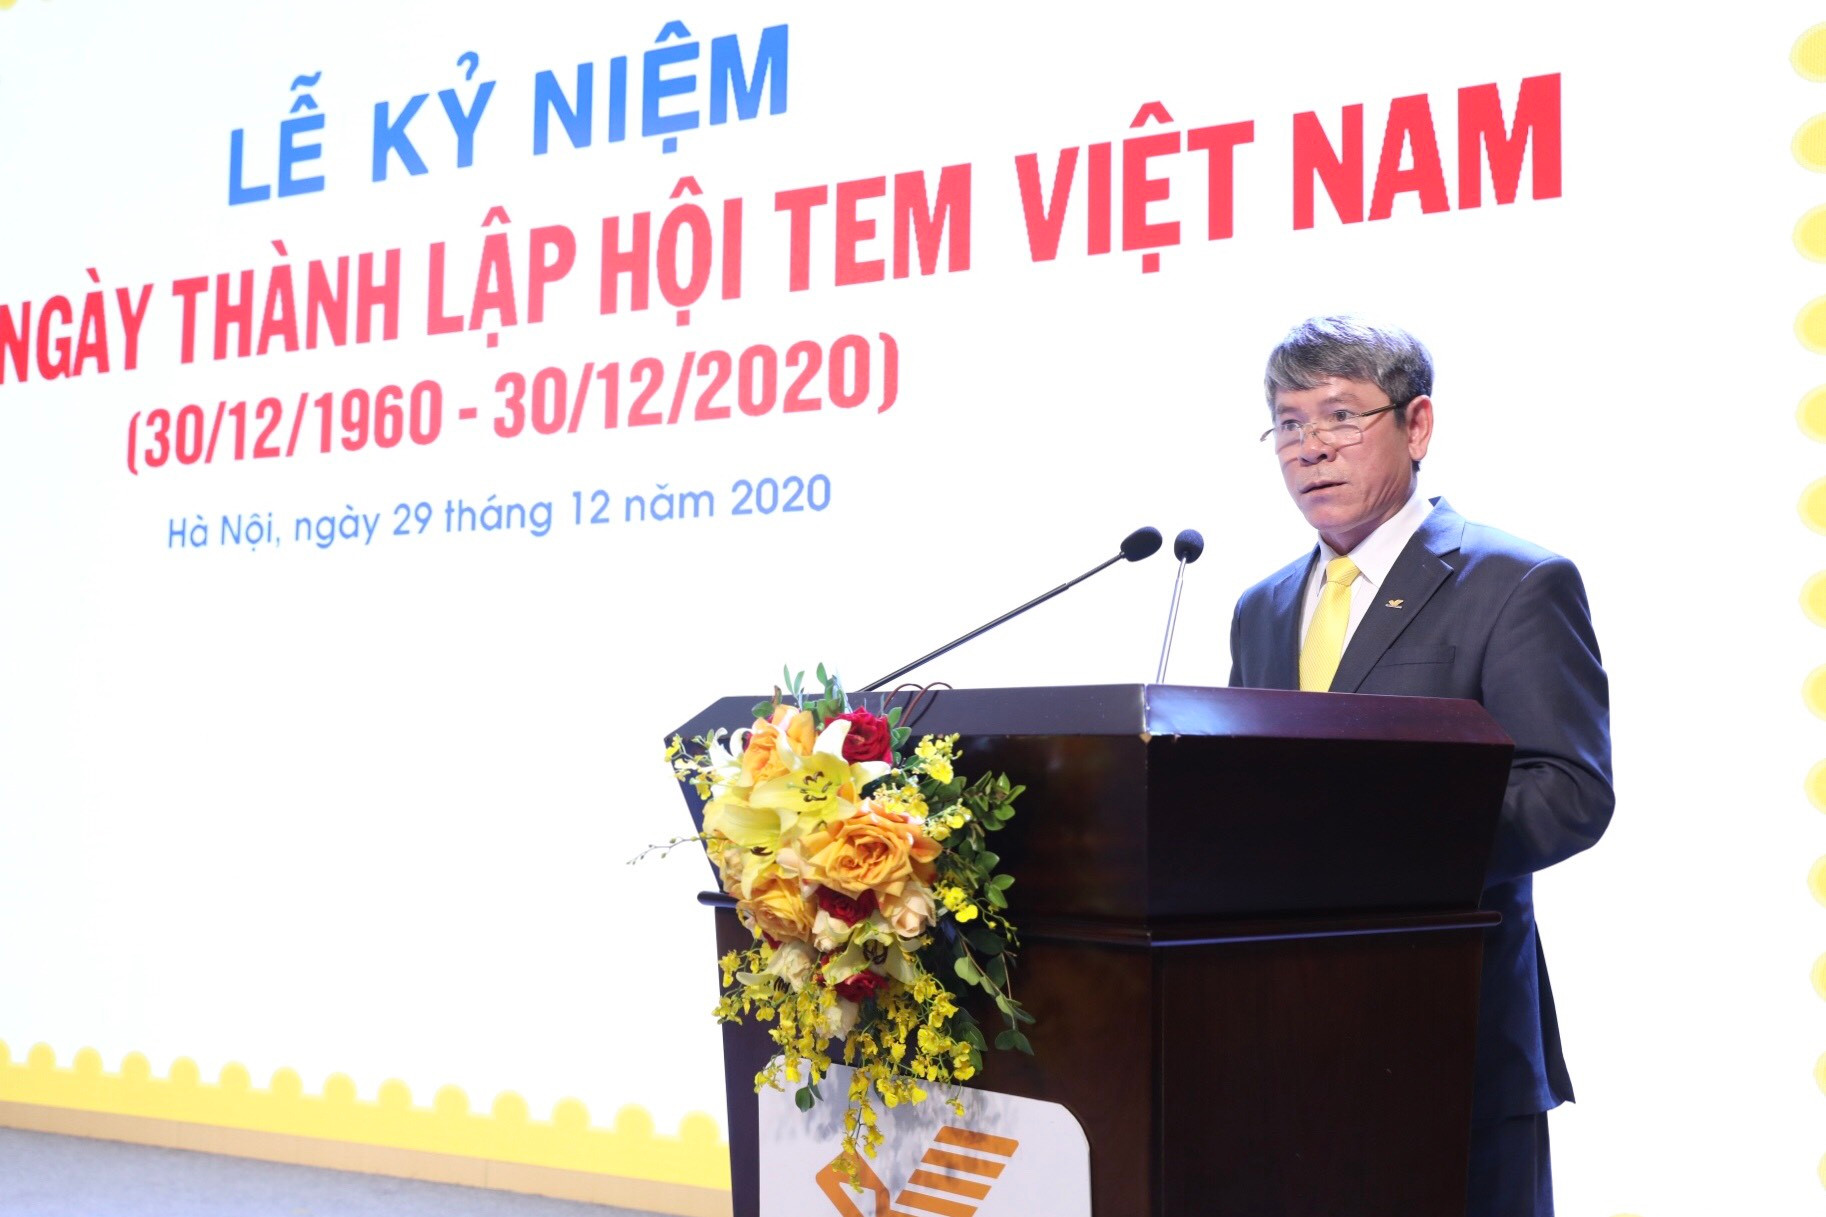 60 năm thành lập Hội Tem: tiếp tục lan tỏa văn hóa Việt ra thế giới - Ảnh 3.